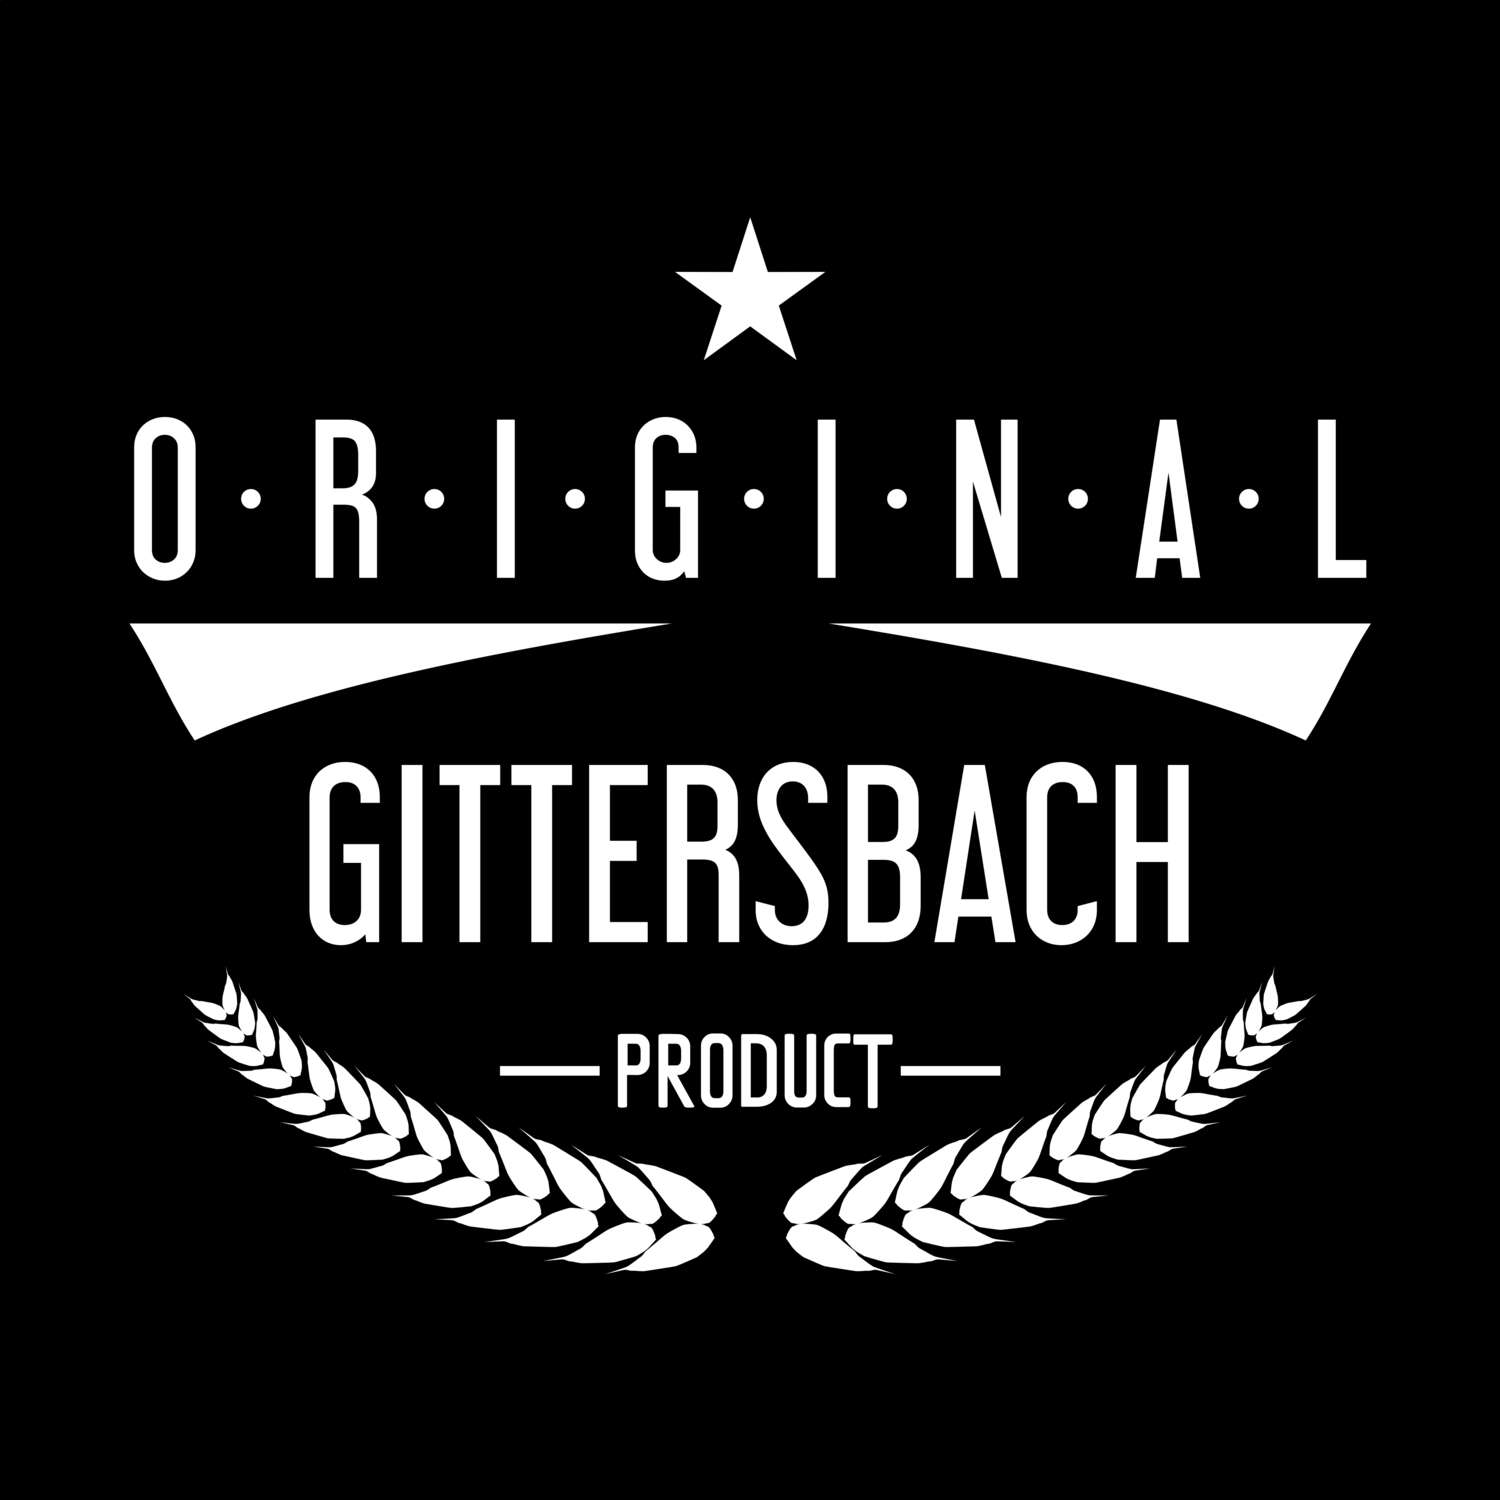 Gittersbach T-Shirt »Original Product«